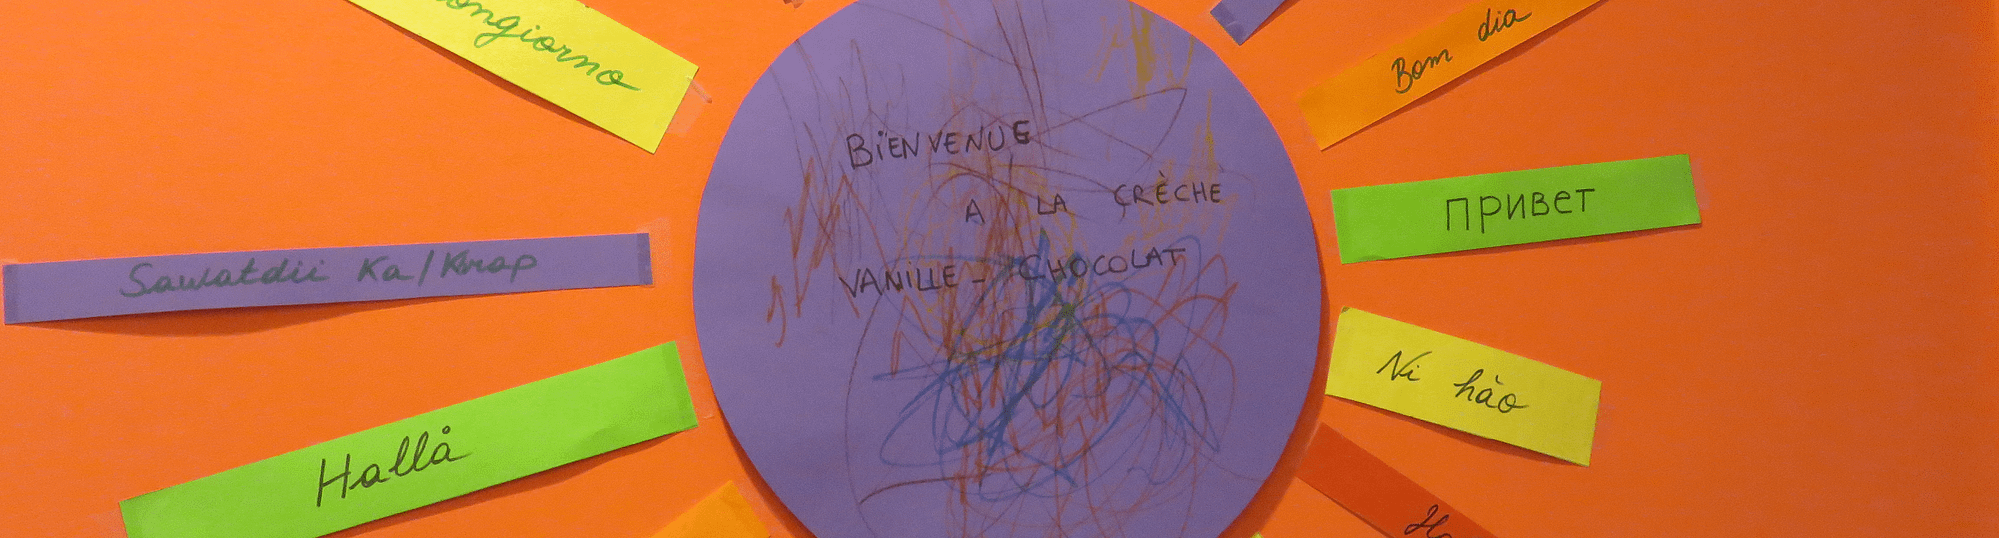 Affichette de bienvenue dans la crèche Vanille-Chocolat